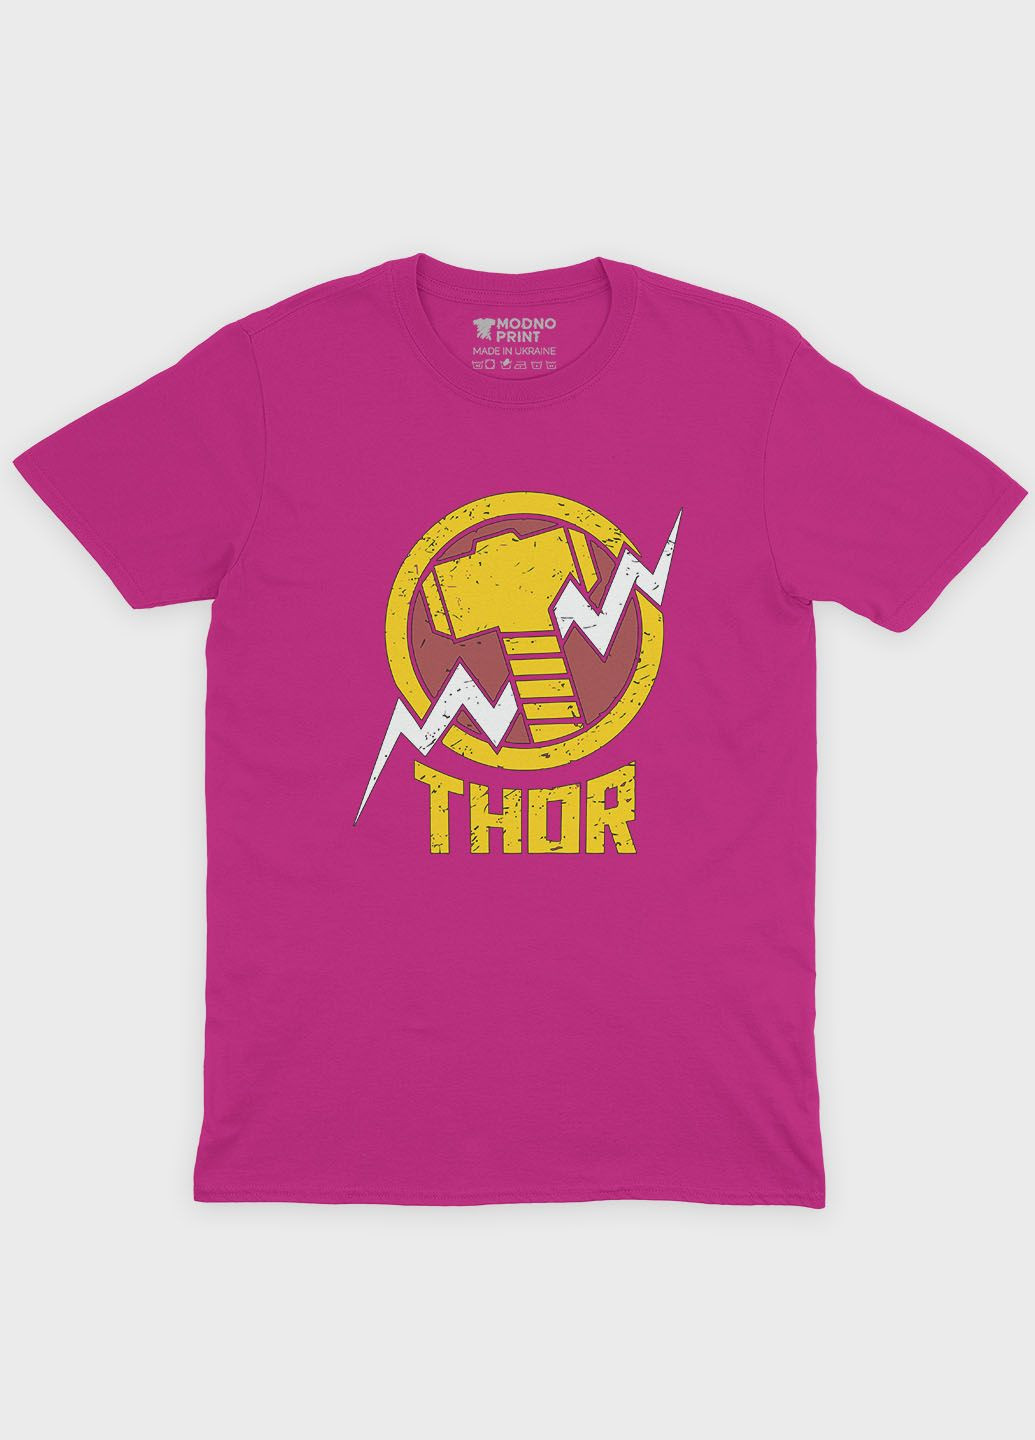 Розовая демисезонная футболка для девочки с принтом супергероя - тор (ts001-1-fuxj-006-024-006-g) Modno